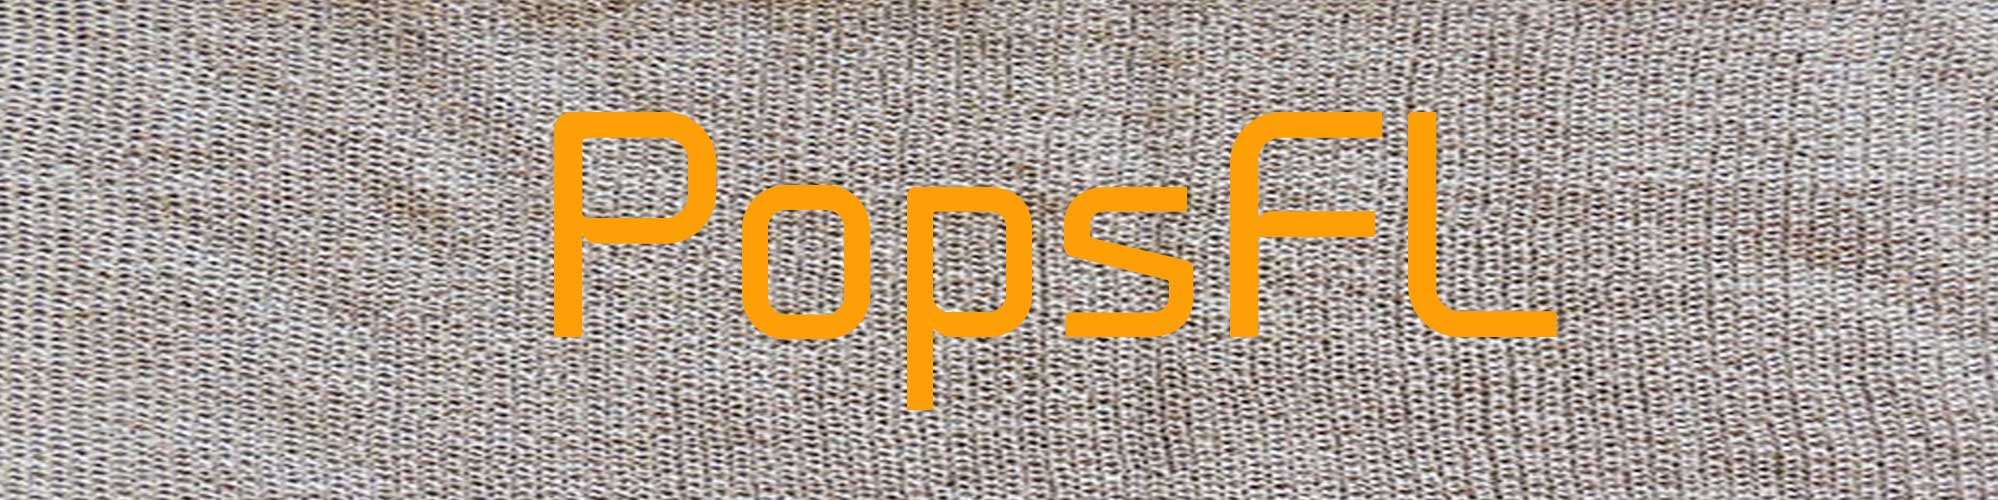 PopsFL knitwear wholesale in alpaca baby alpaca and pima cotton